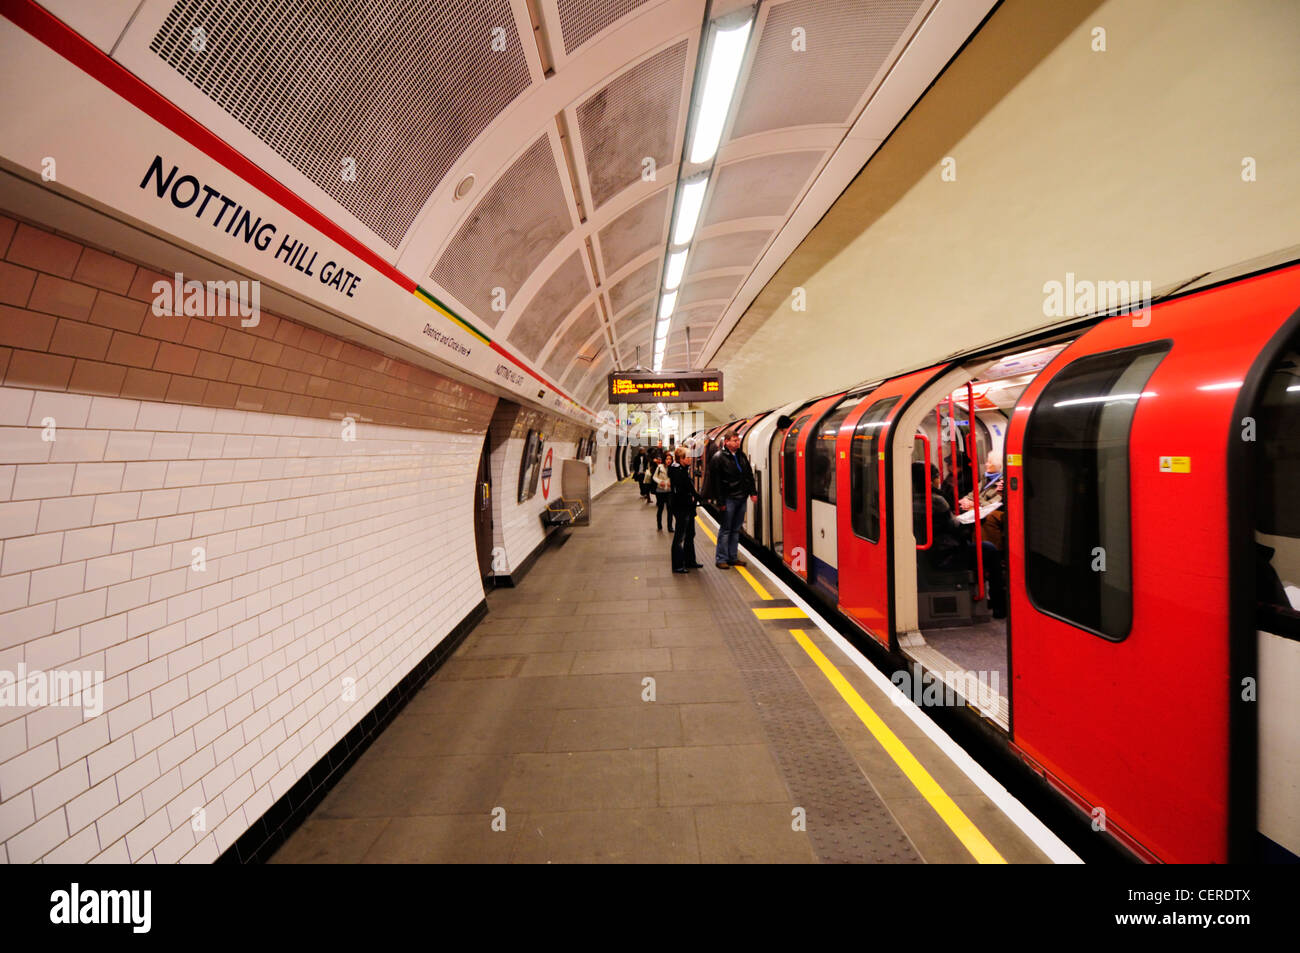 Les passagers d'une ligne centrale du tube, à la station de métro Notting Hill Gate. Banque D'Images